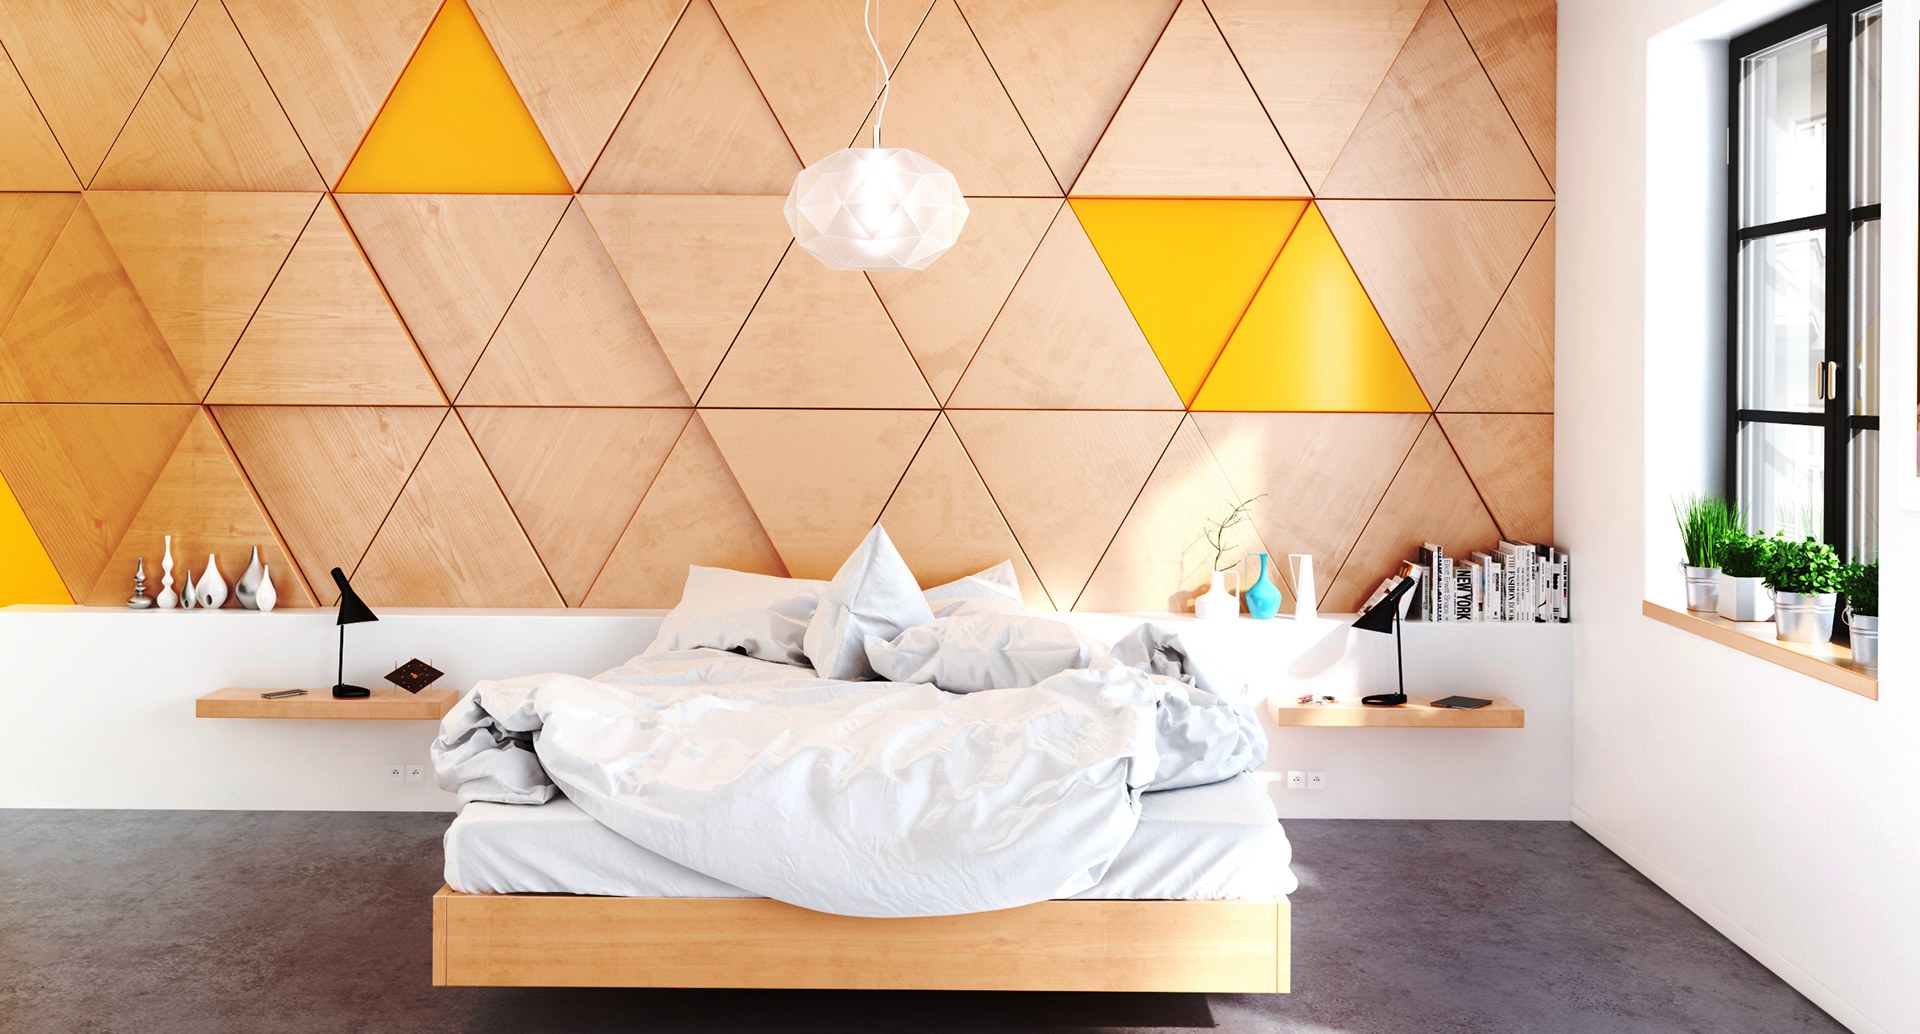 Những căn phòng ngủ dùng chất liệu gỗ để trang trí vừa đơn giản, ấm cúng mà không kém phần ấn tượng